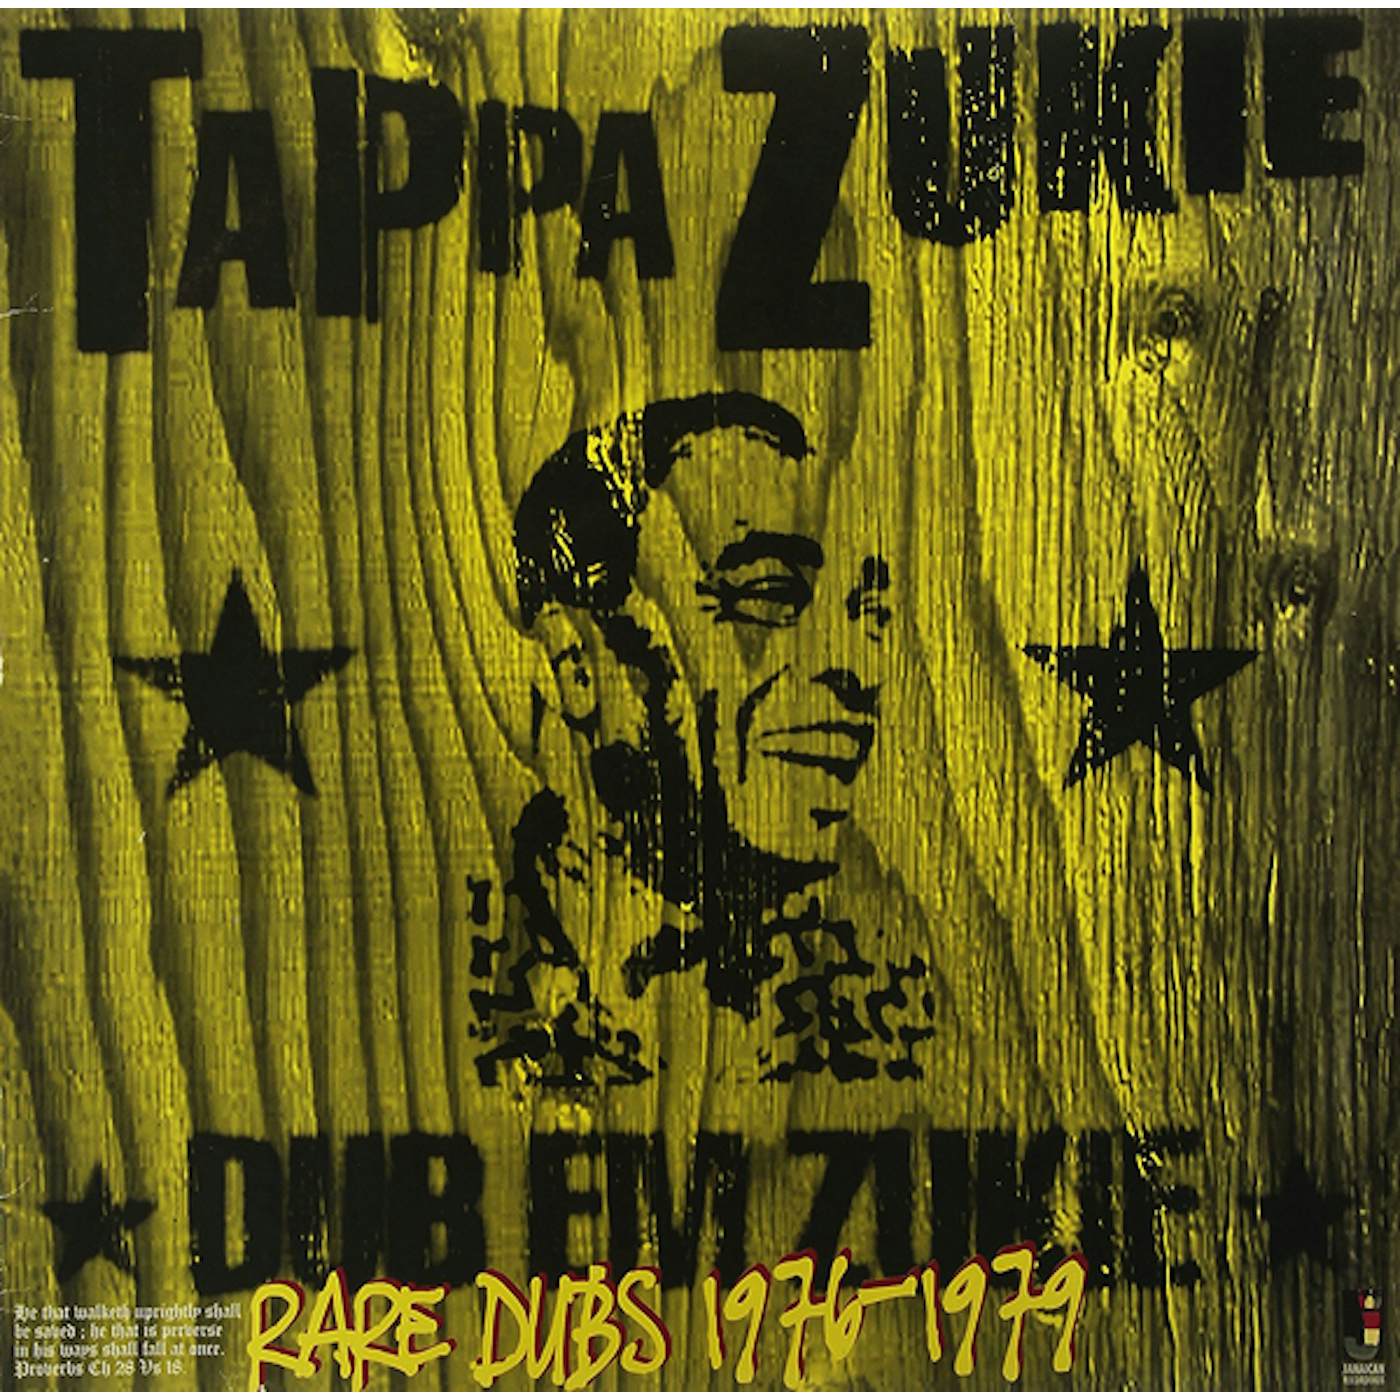 Tappa Zukie DUB EM ZUKIE (RARE DUBS 1976-1979) CD